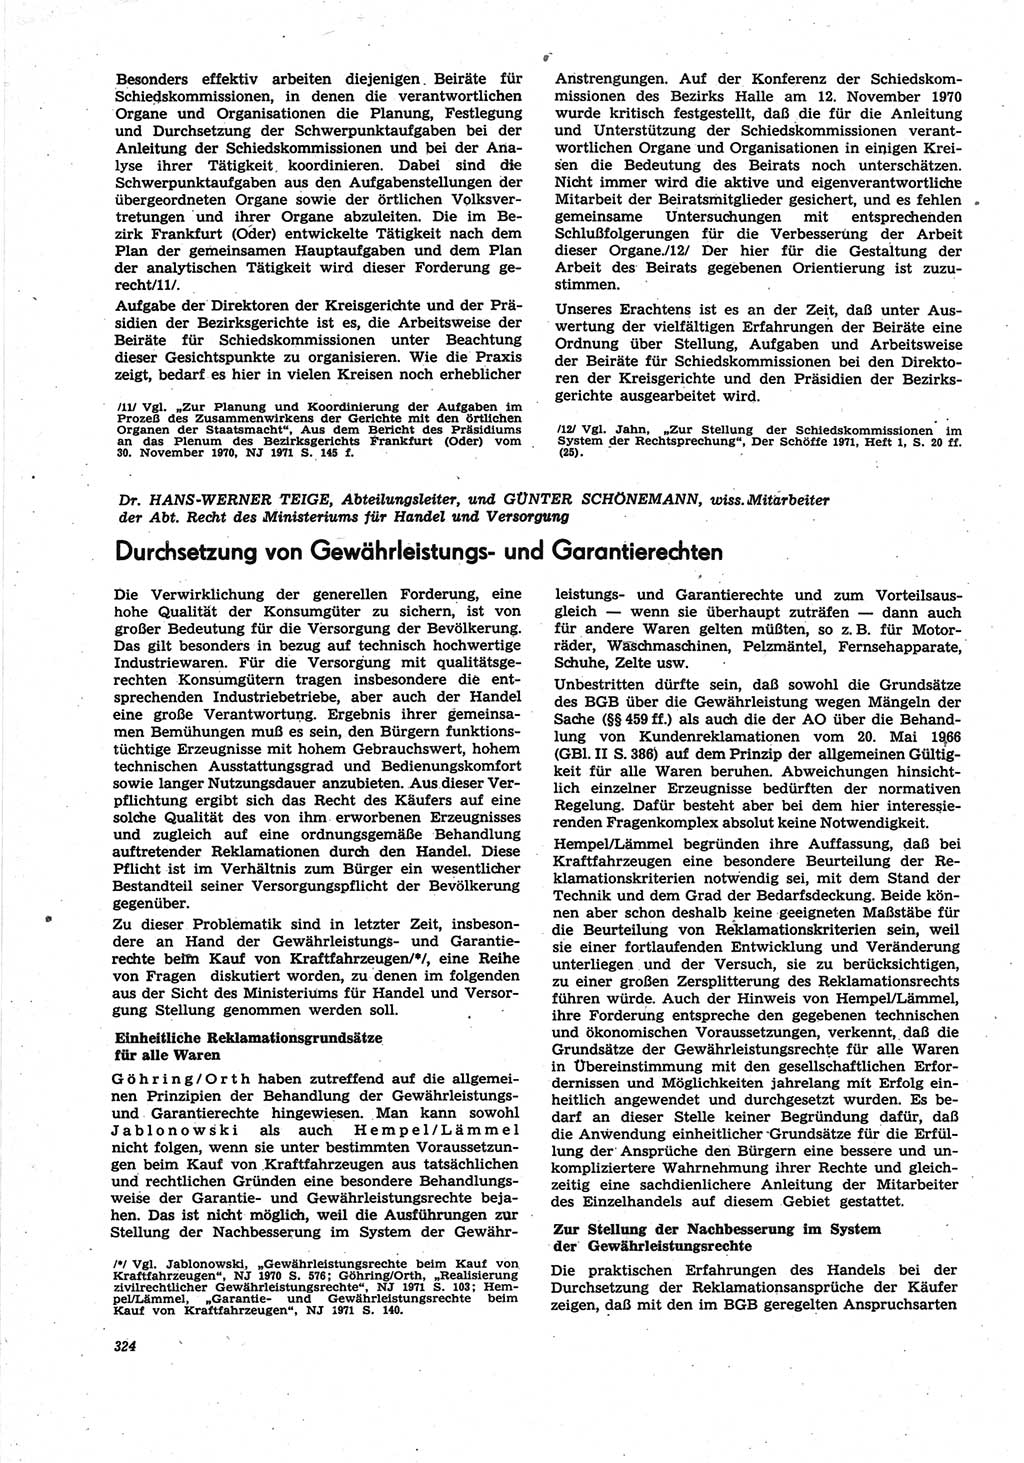 Neue Justiz (NJ), Zeitschrift für Recht und Rechtswissenschaft [Deutsche Demokratische Republik (DDR)], 25. Jahrgang 1971, Seite 324 (NJ DDR 1971, S. 324)